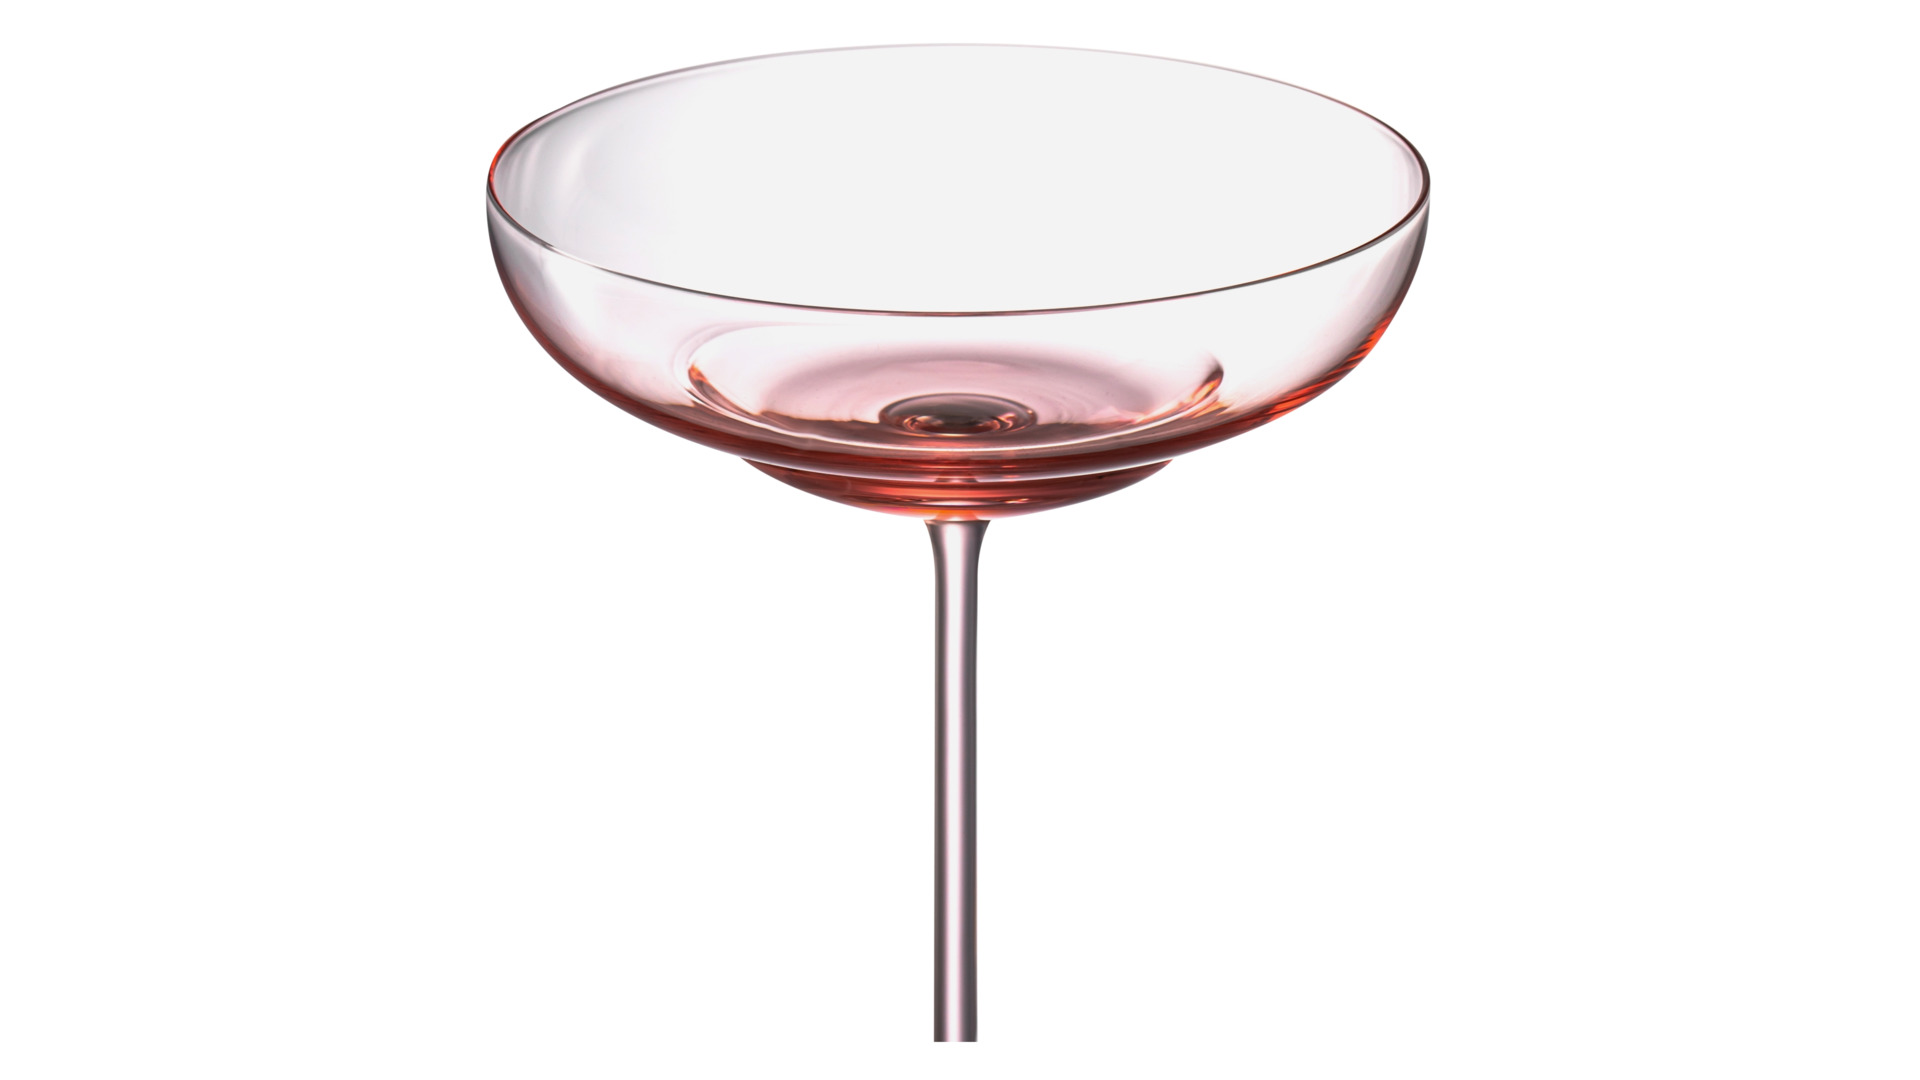 Набор бокалов для коктейля Klimchi Тени 160 мл, 2 шт, богемское стекло, розовый